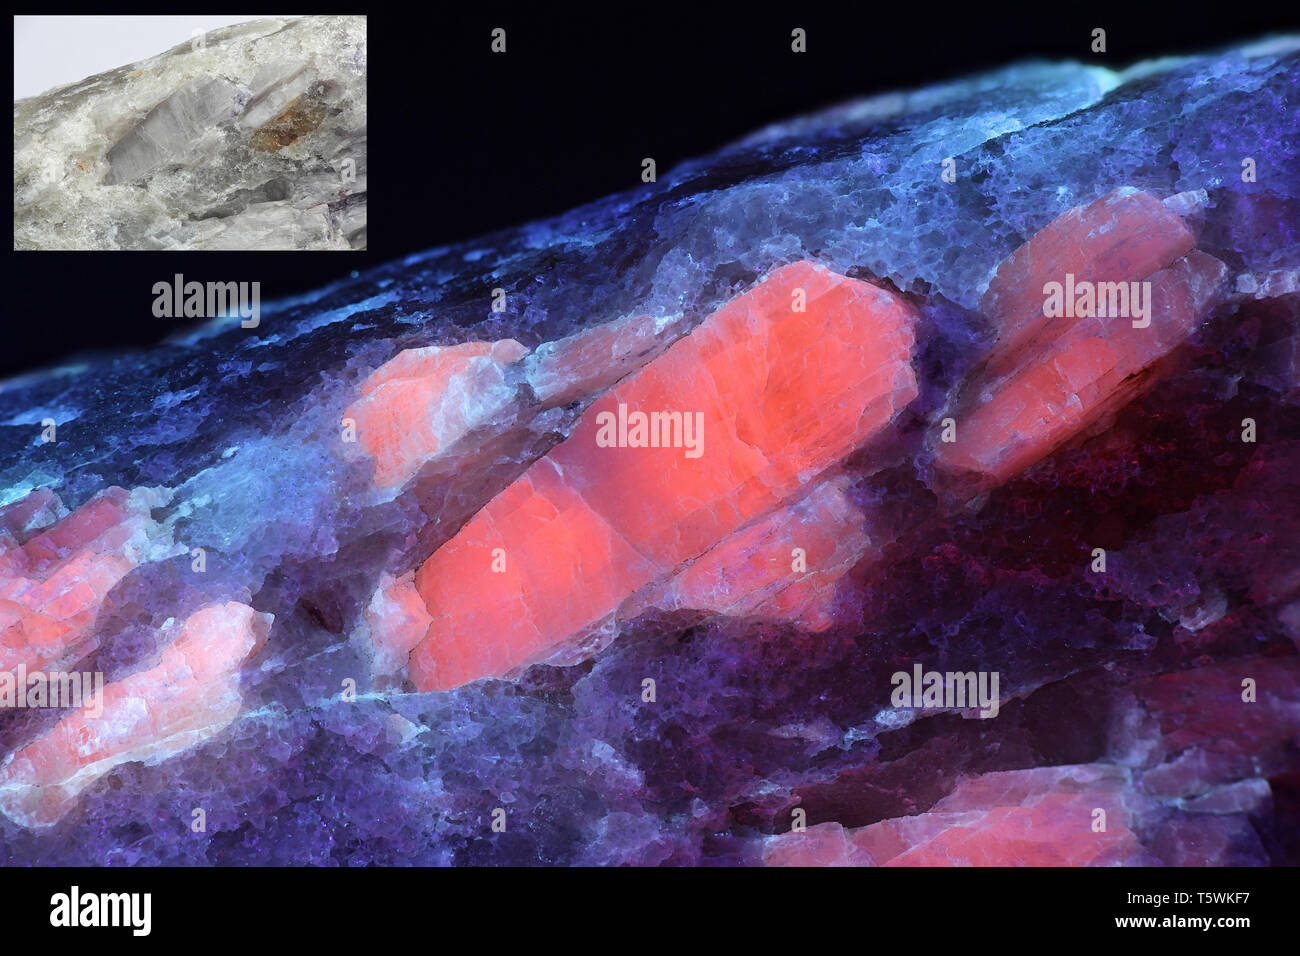 Kristalle von industriellen Lithium Erz spodumene zeigen rote Fluoreszenz im UV-Licht (365 nm). Kleineres Bild derselben Probe bei normalem Licht. Stockfoto